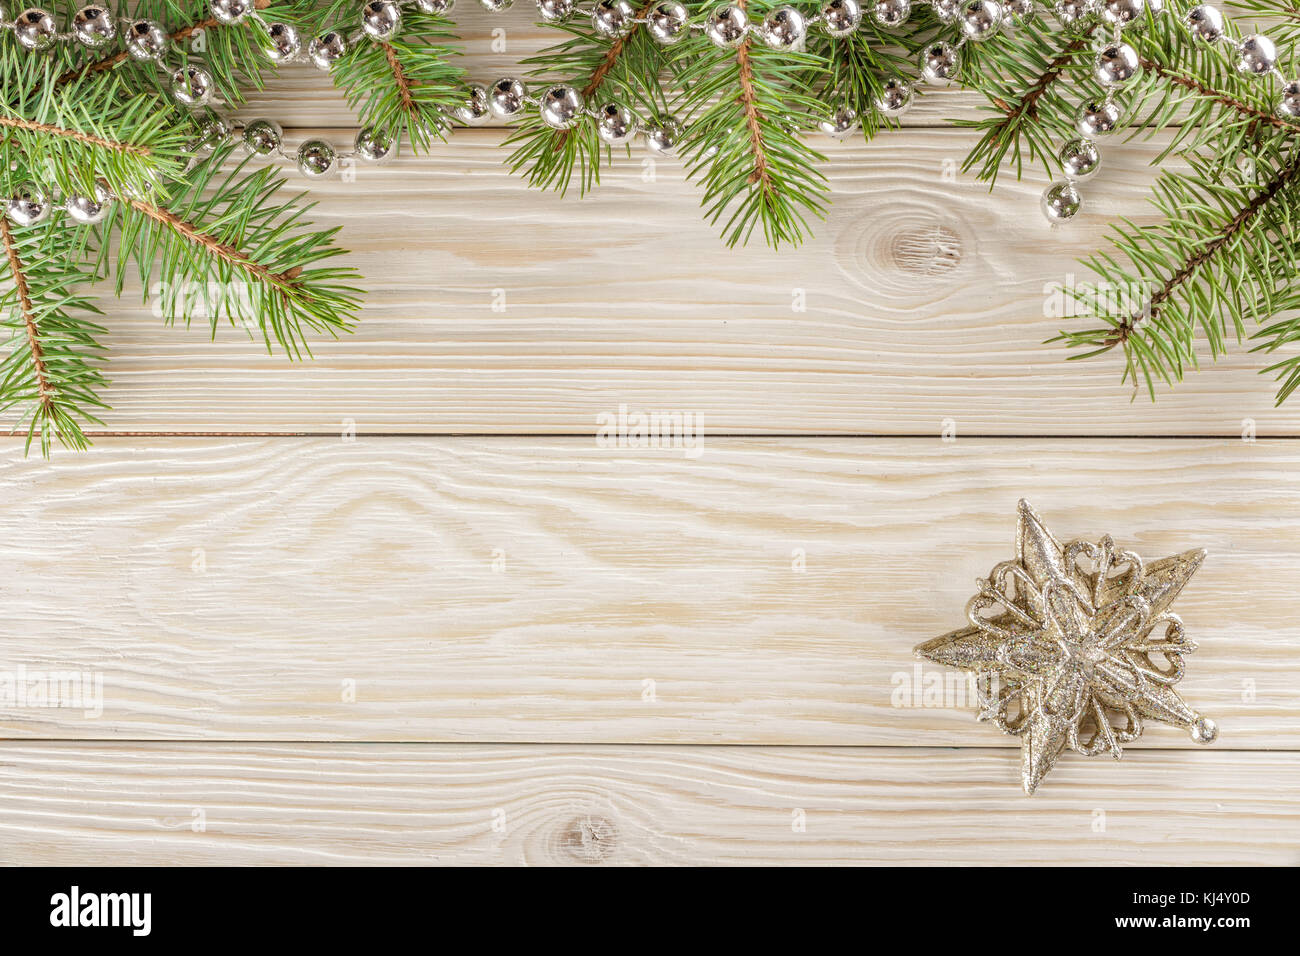 Holz Hintergrund Mit Frame Oben Ohne Vignette Konnen Sie Den Text Schreiben Weihnachten Stern Stockfotografie Alamy